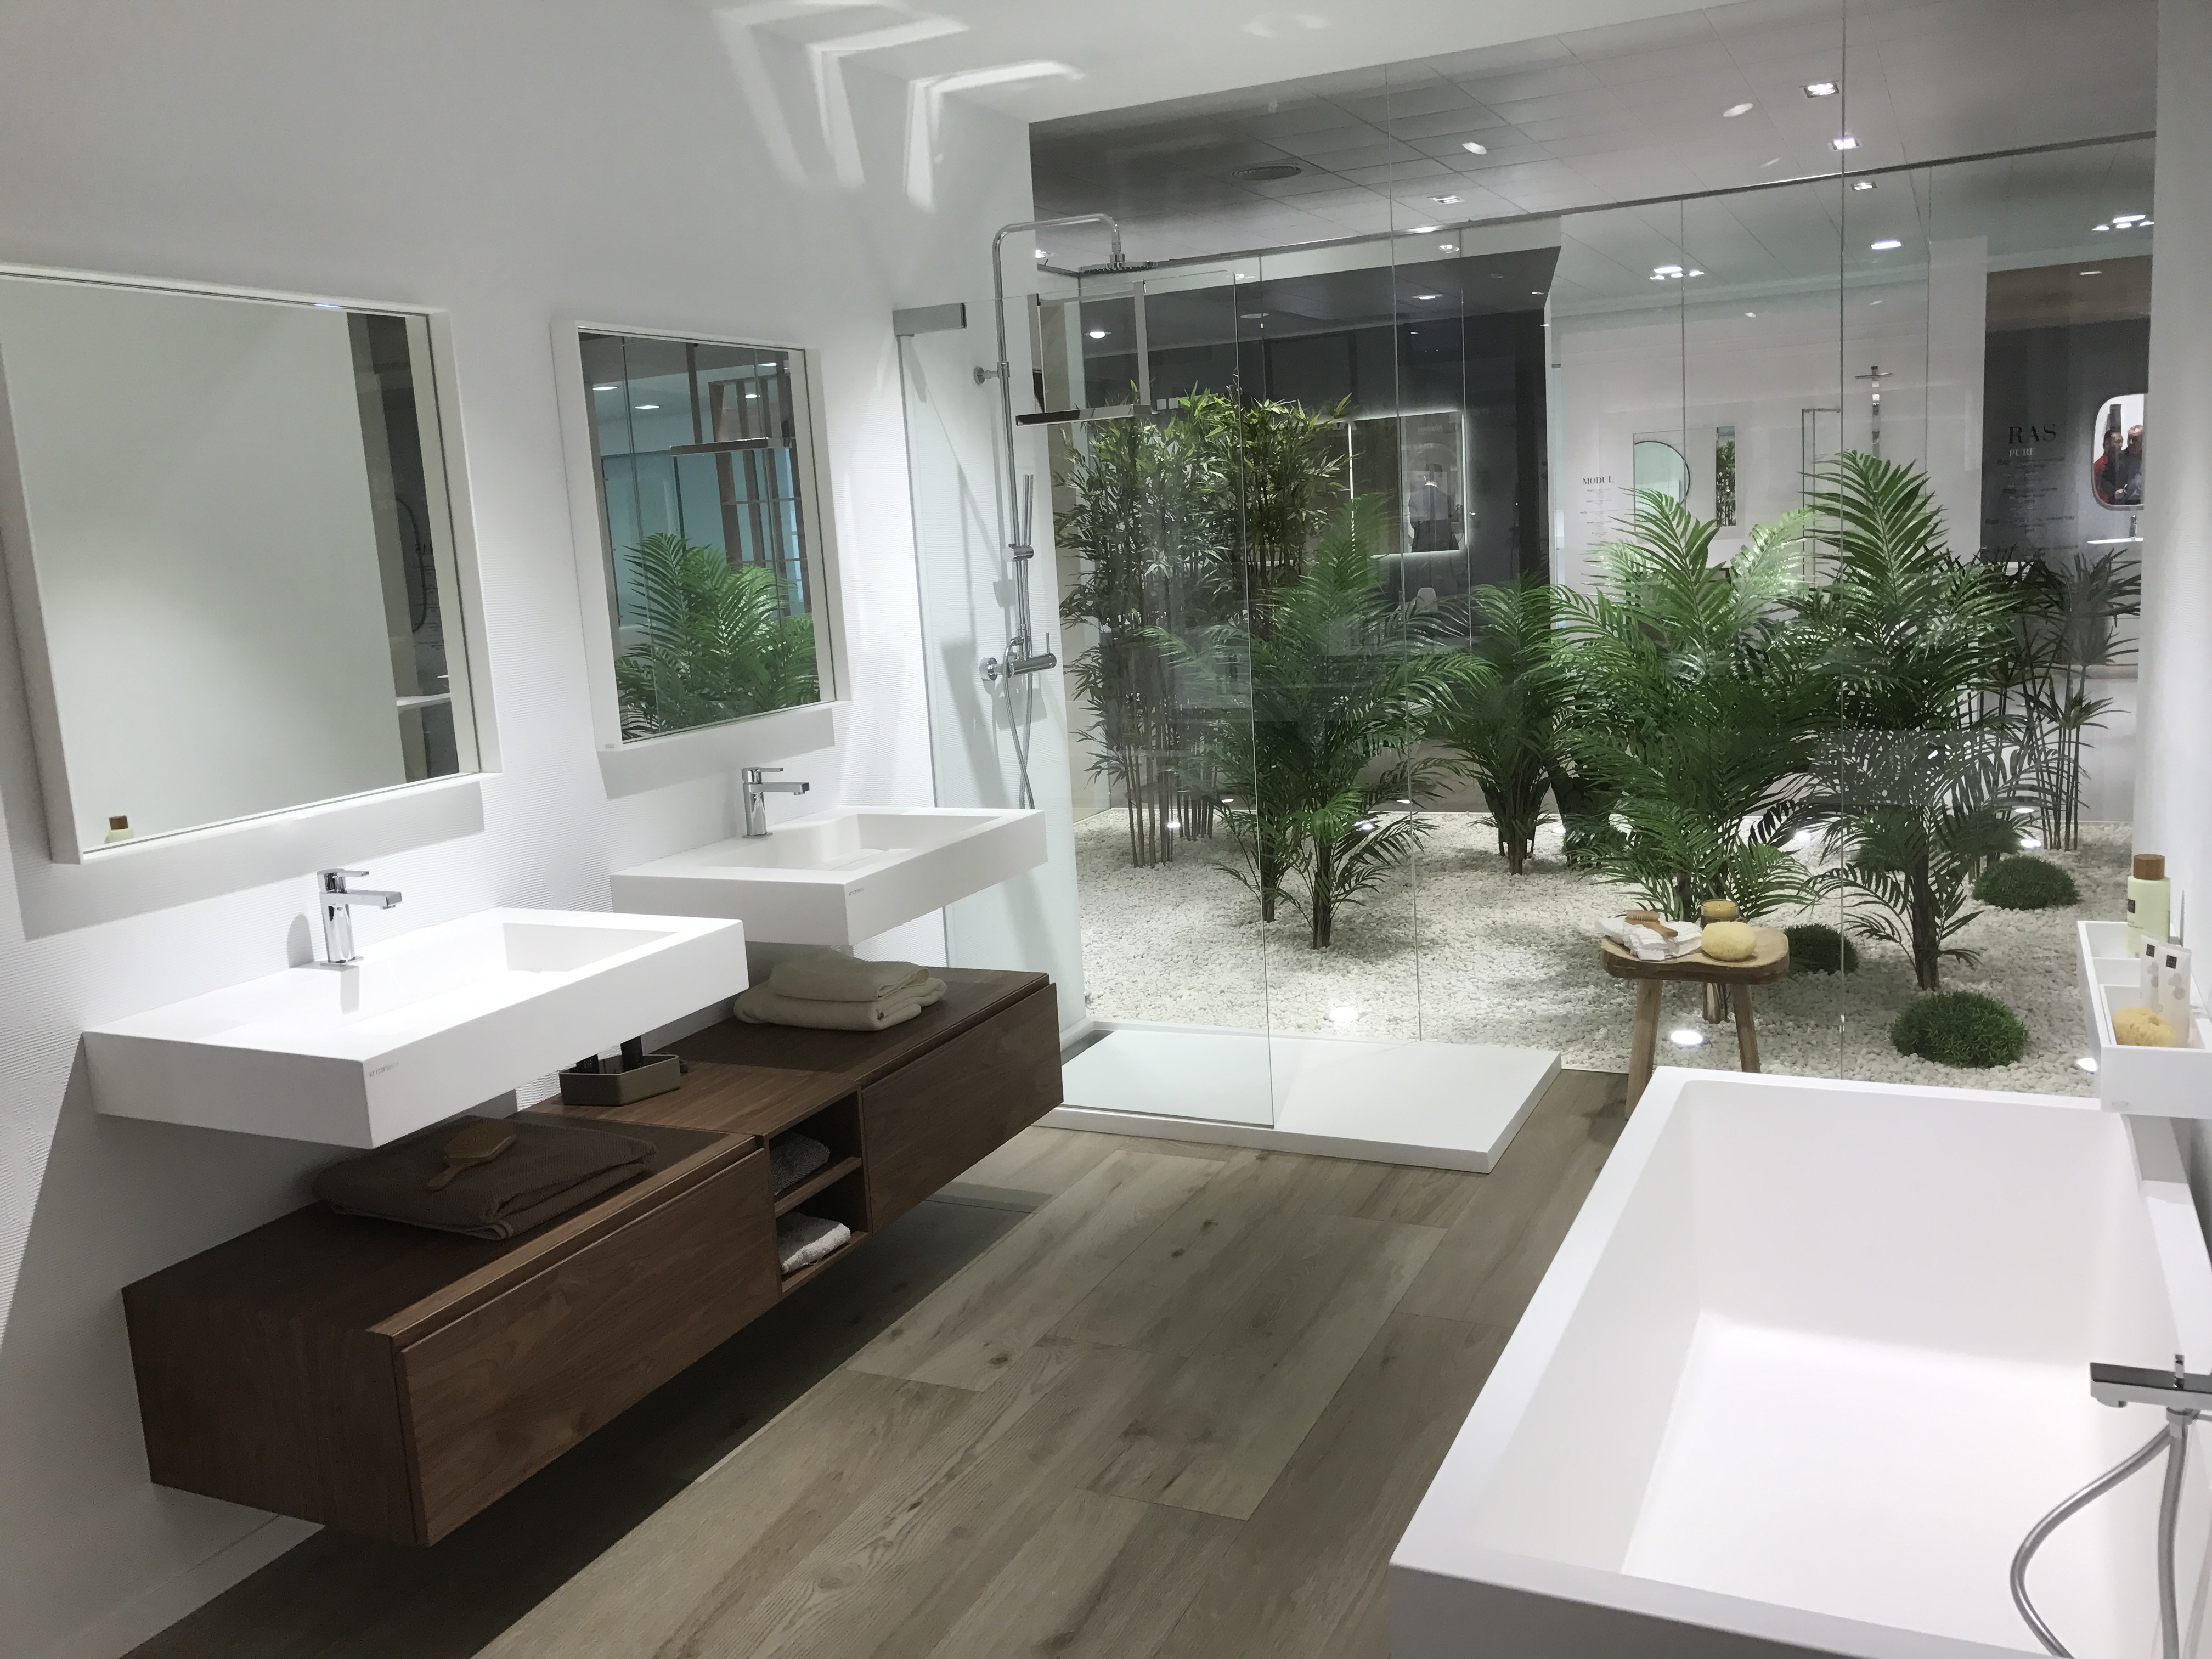 Modern angular bathroom furniture